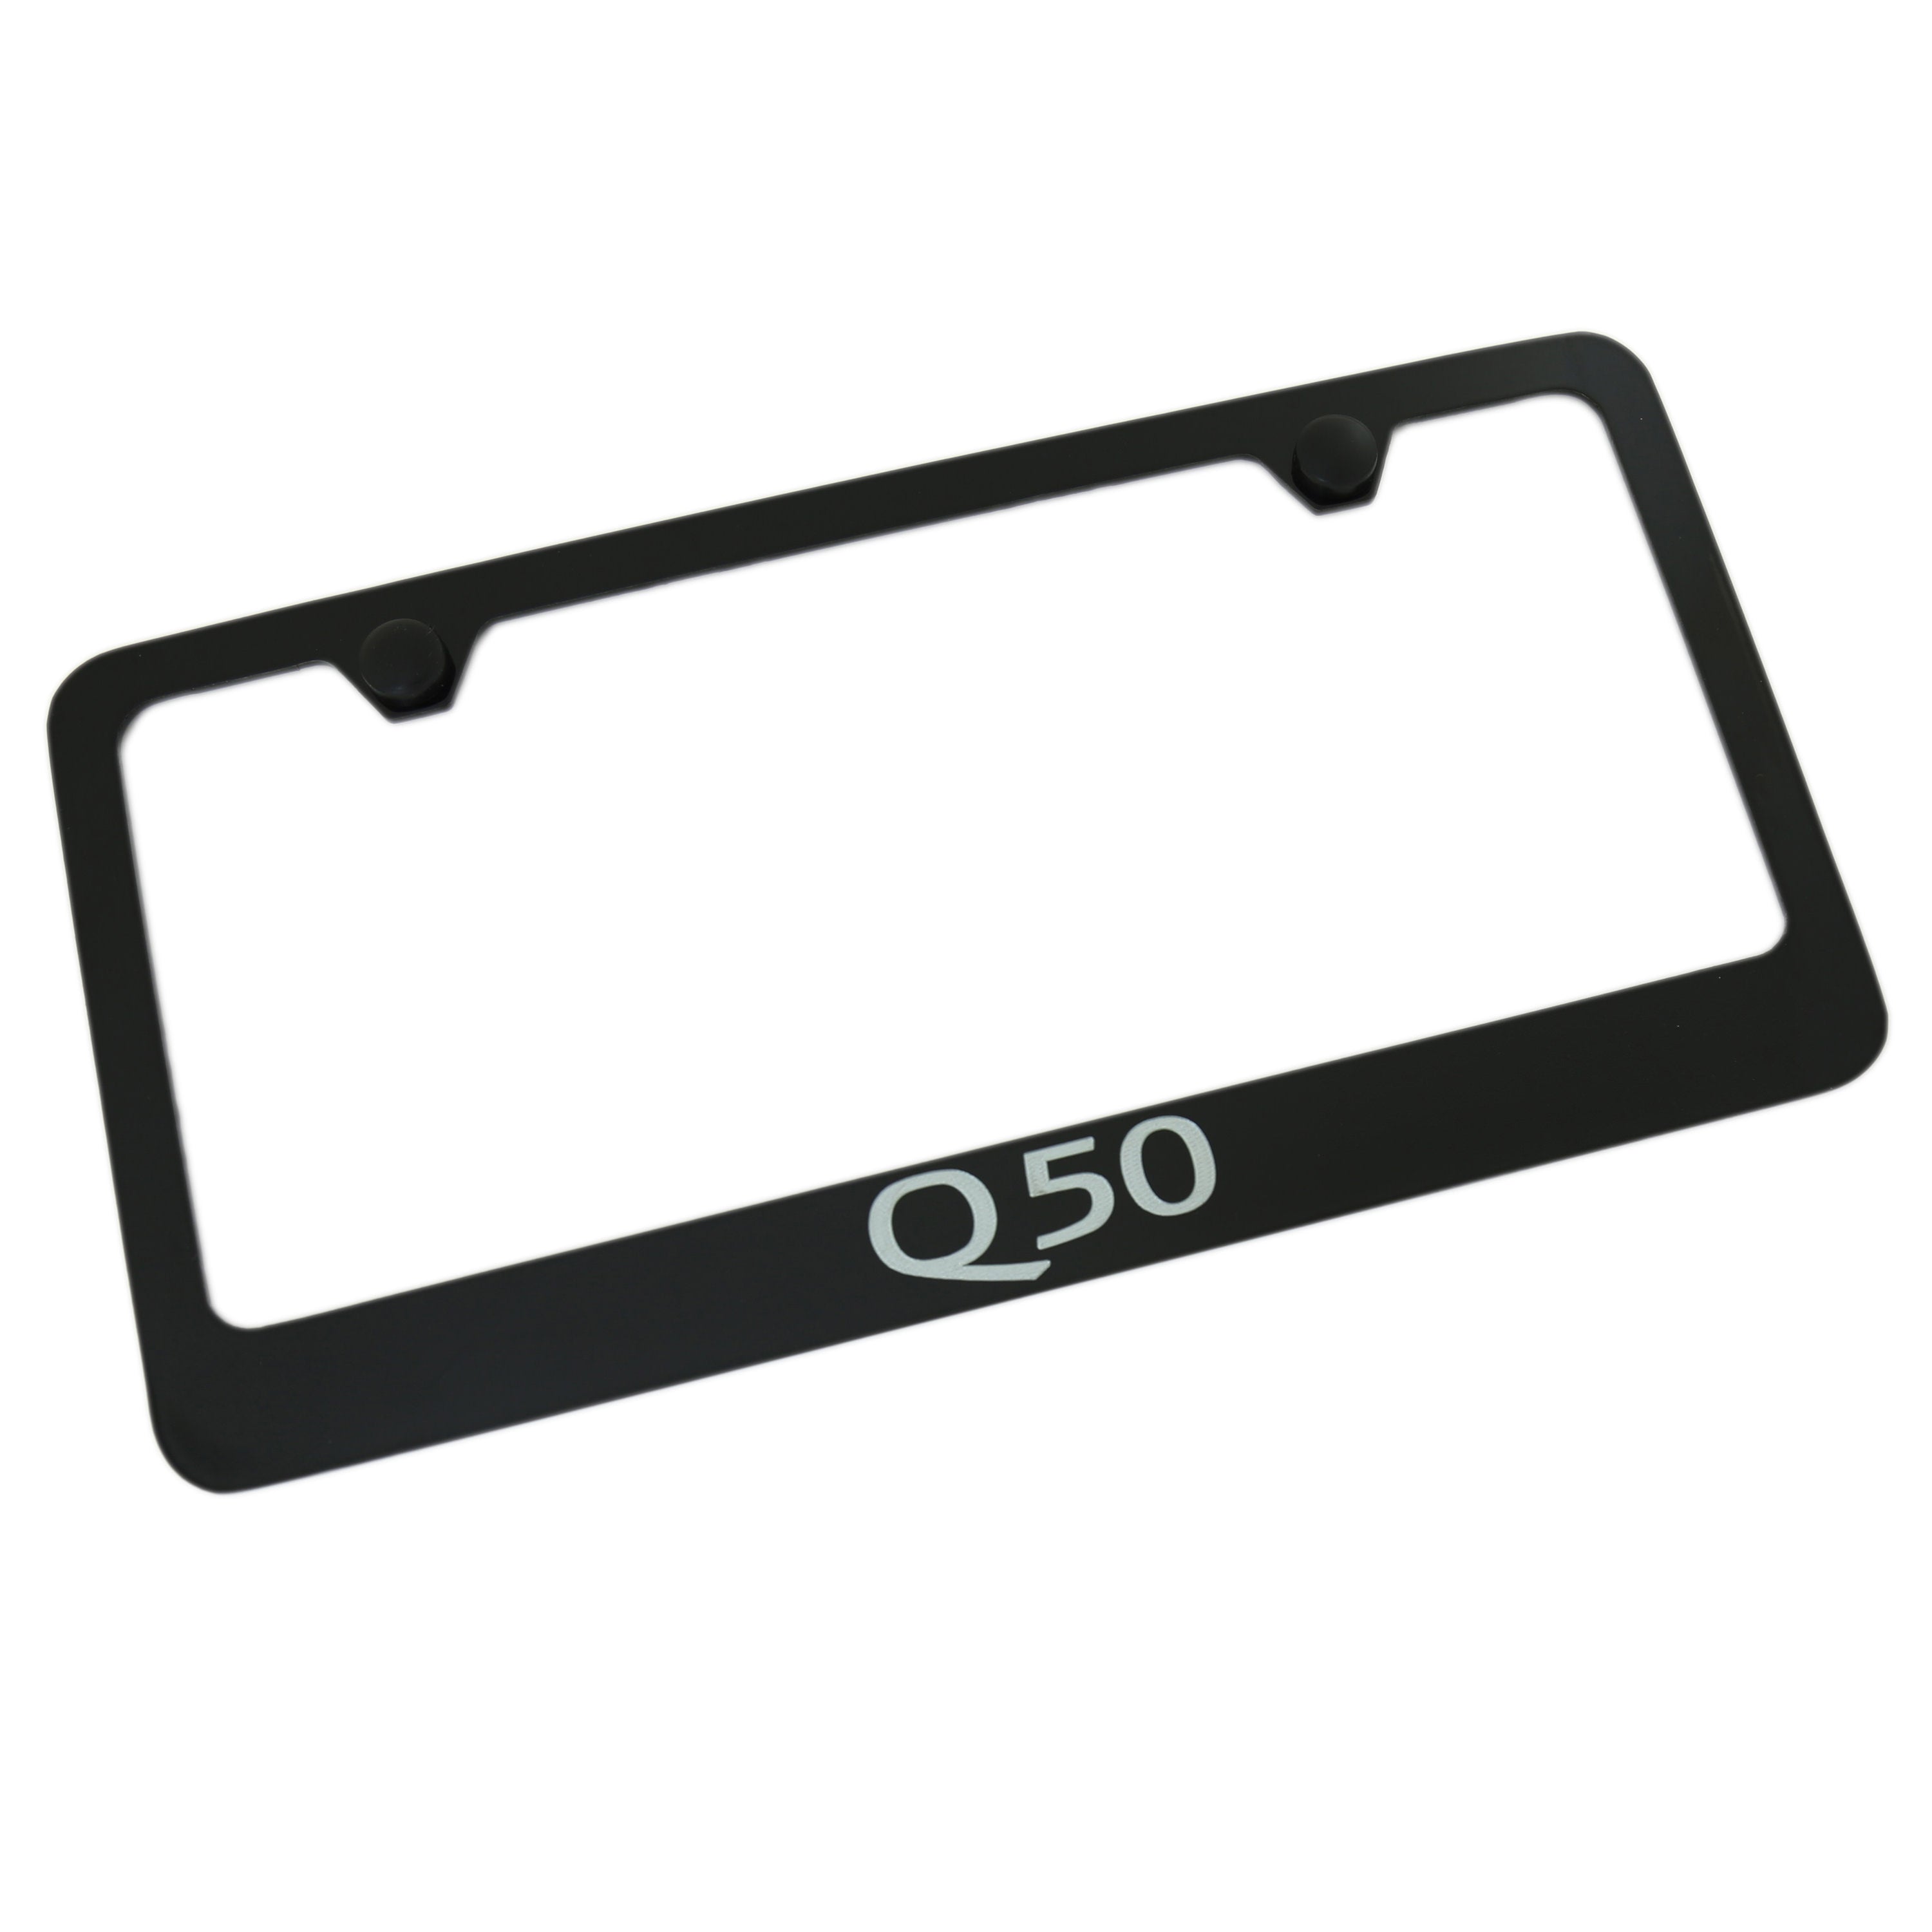 Infiniti Q50 License Plate Frame (Black) - Custom Werks